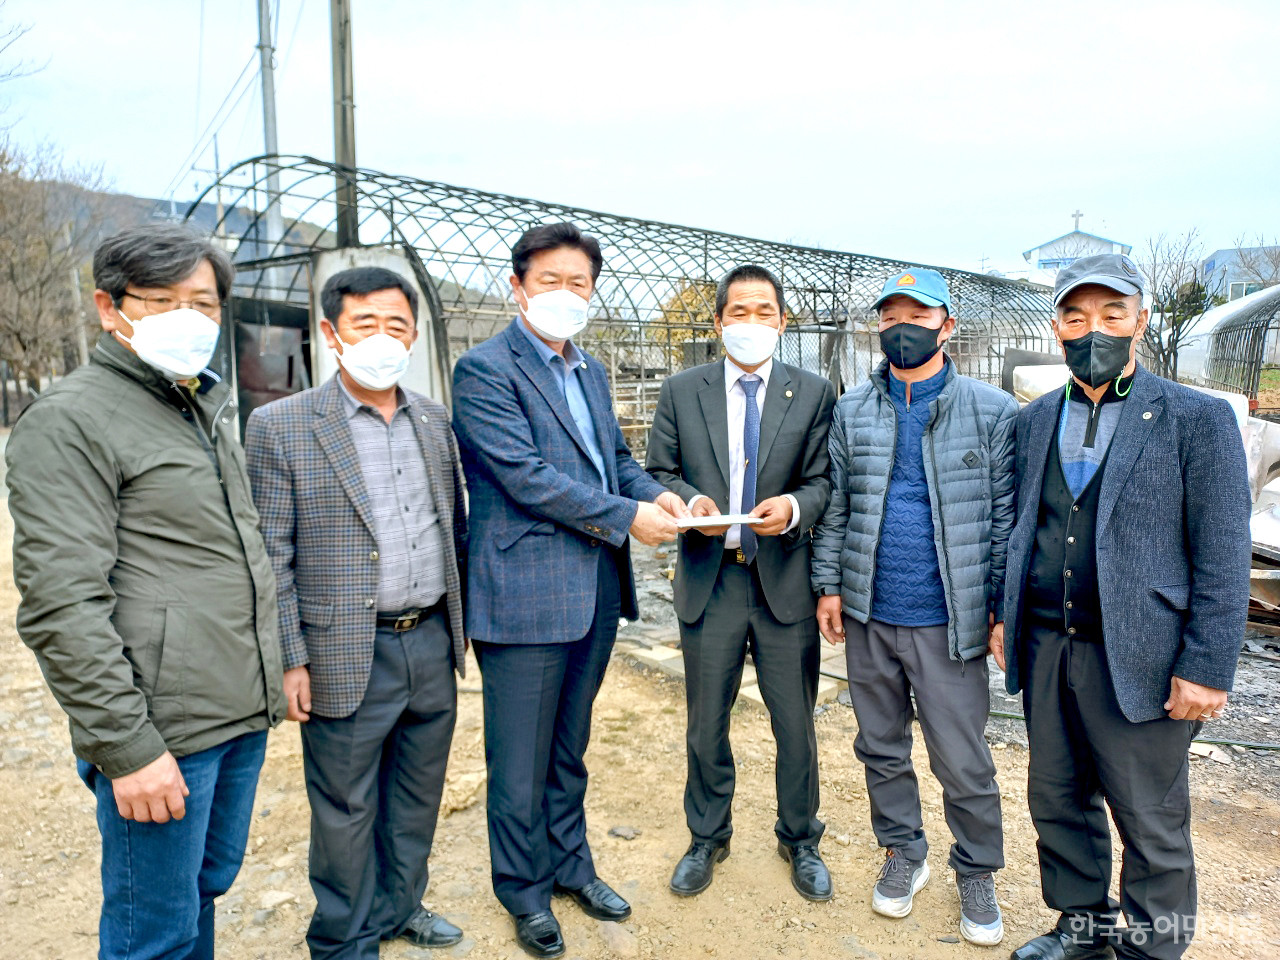 지난 3월 11일 이학구 한농연중앙연합회장과 중앙회 임원들은 동해안 산불 피해를 입은 한농연 회원들을 방문했다.